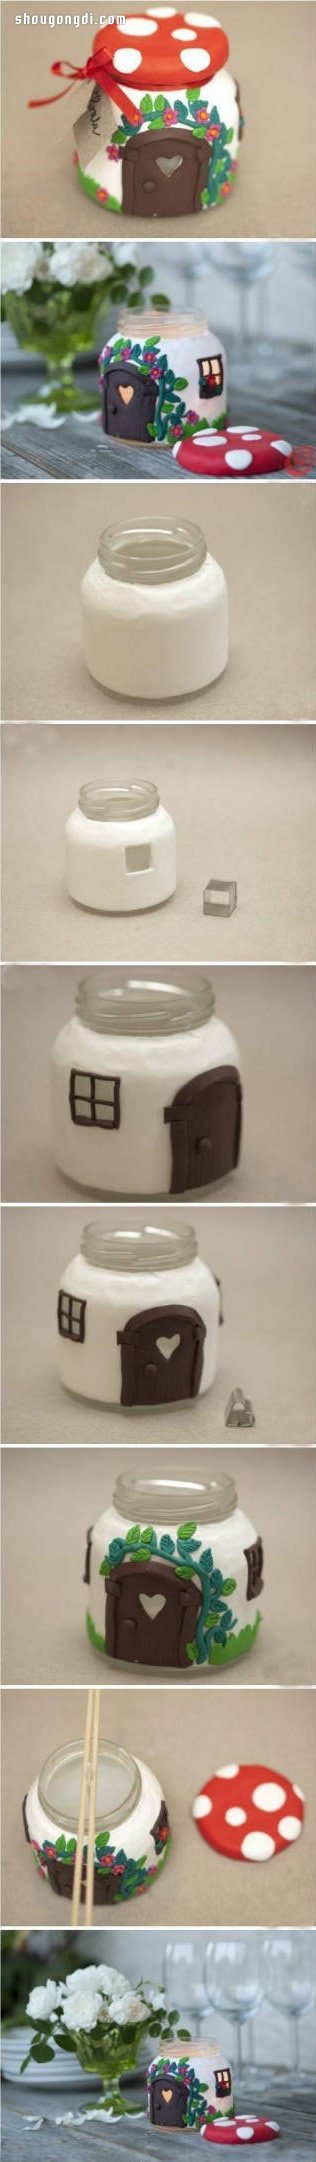 玻璃罐變廢為寶手工制作童話小房子裝飾擺件- www.shougongdi.com